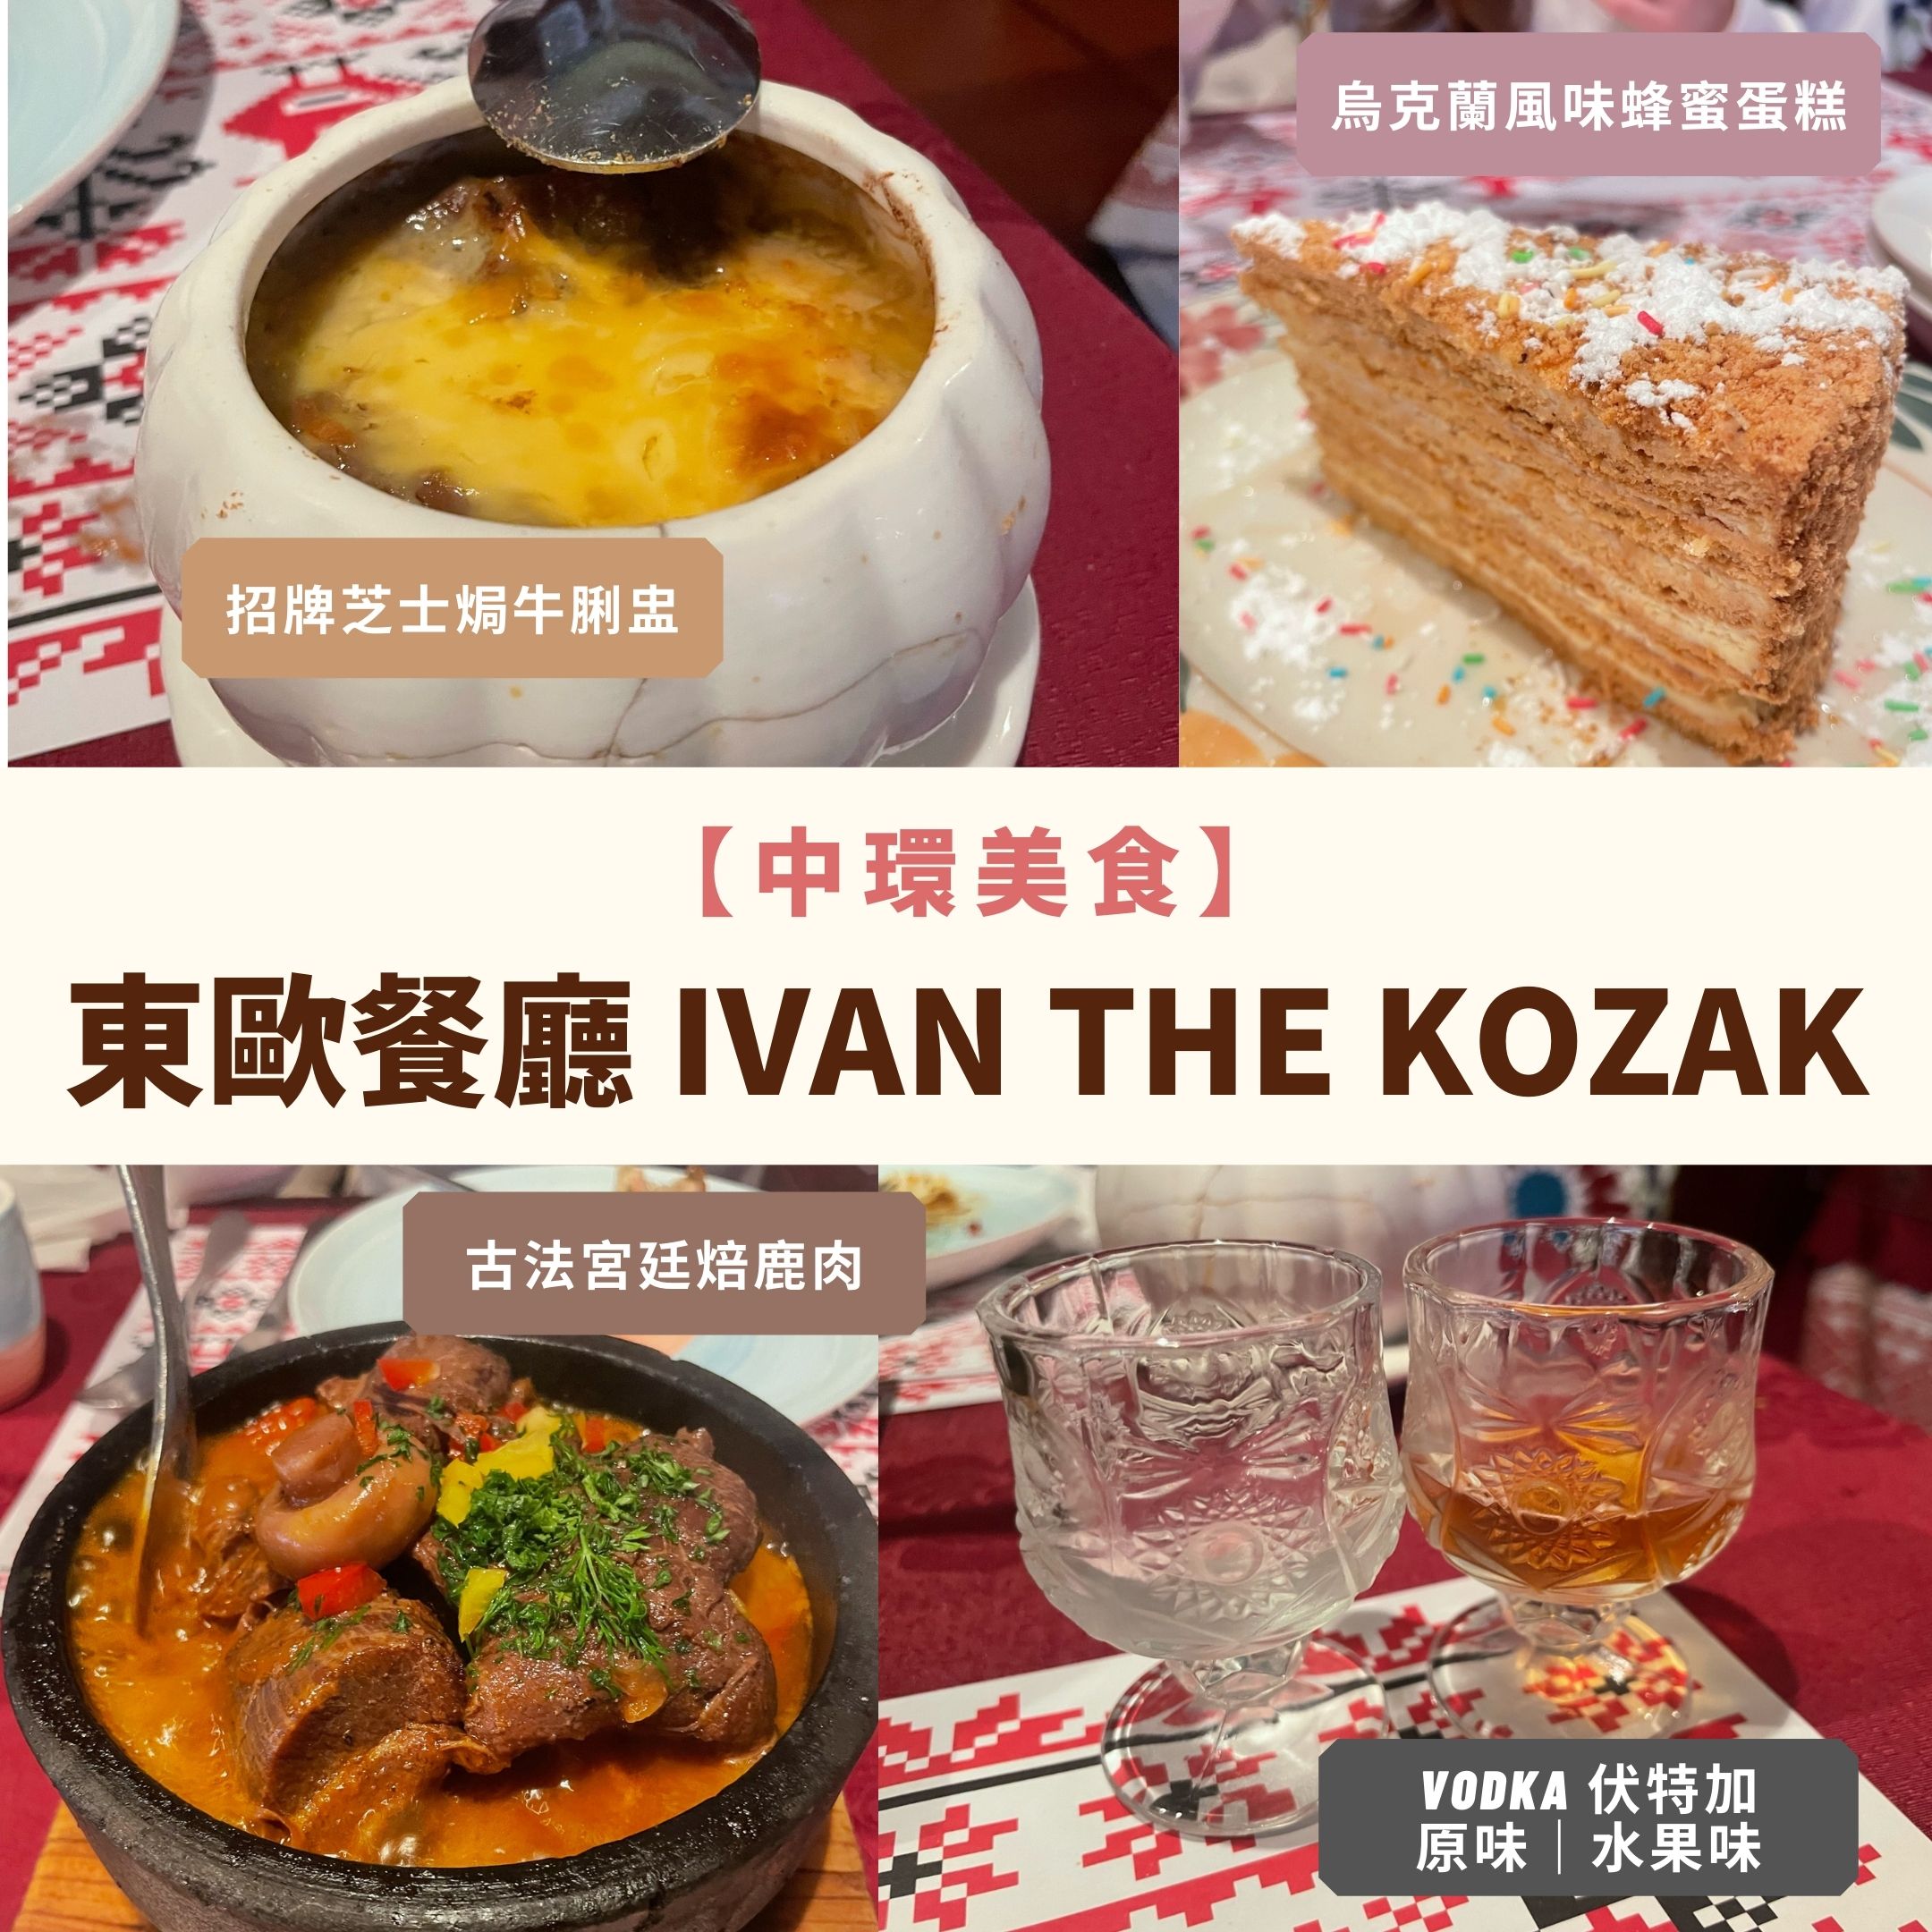 中環餐廳-東歐餐廳-東歐美食-烏克蘭餐廳 Ivan The Kozak